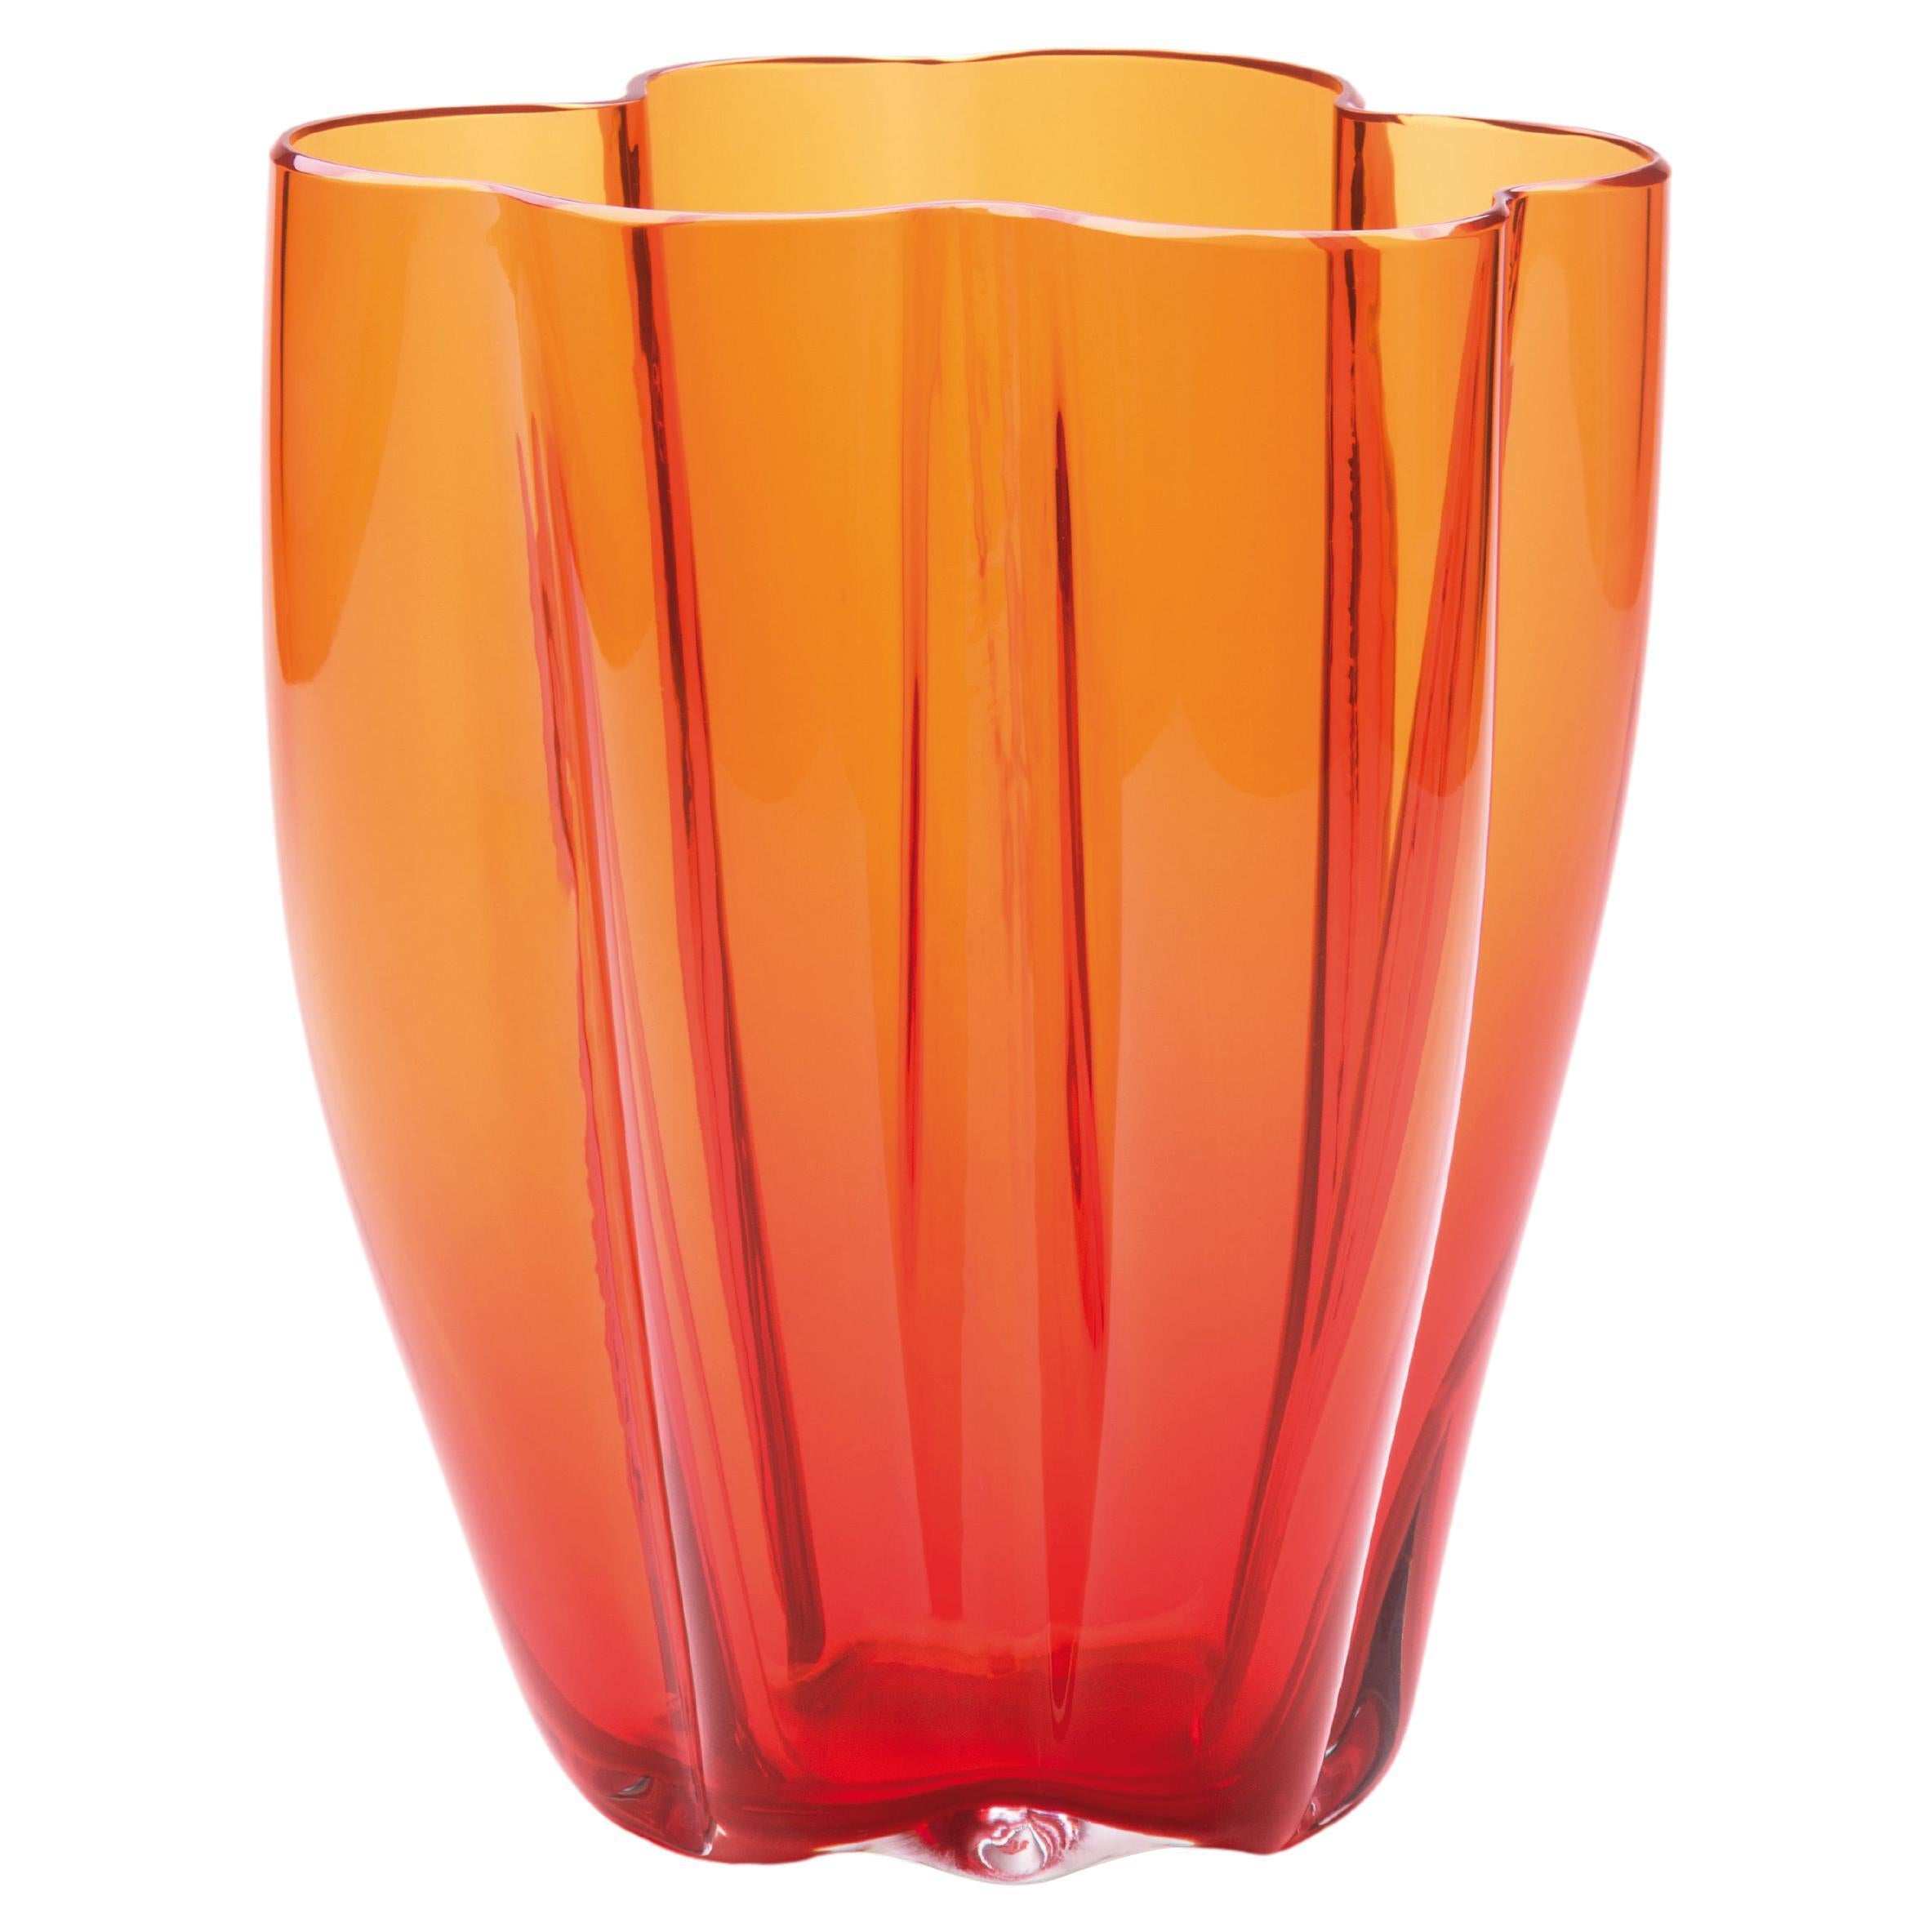 Grand vase orange Petalo de Purho